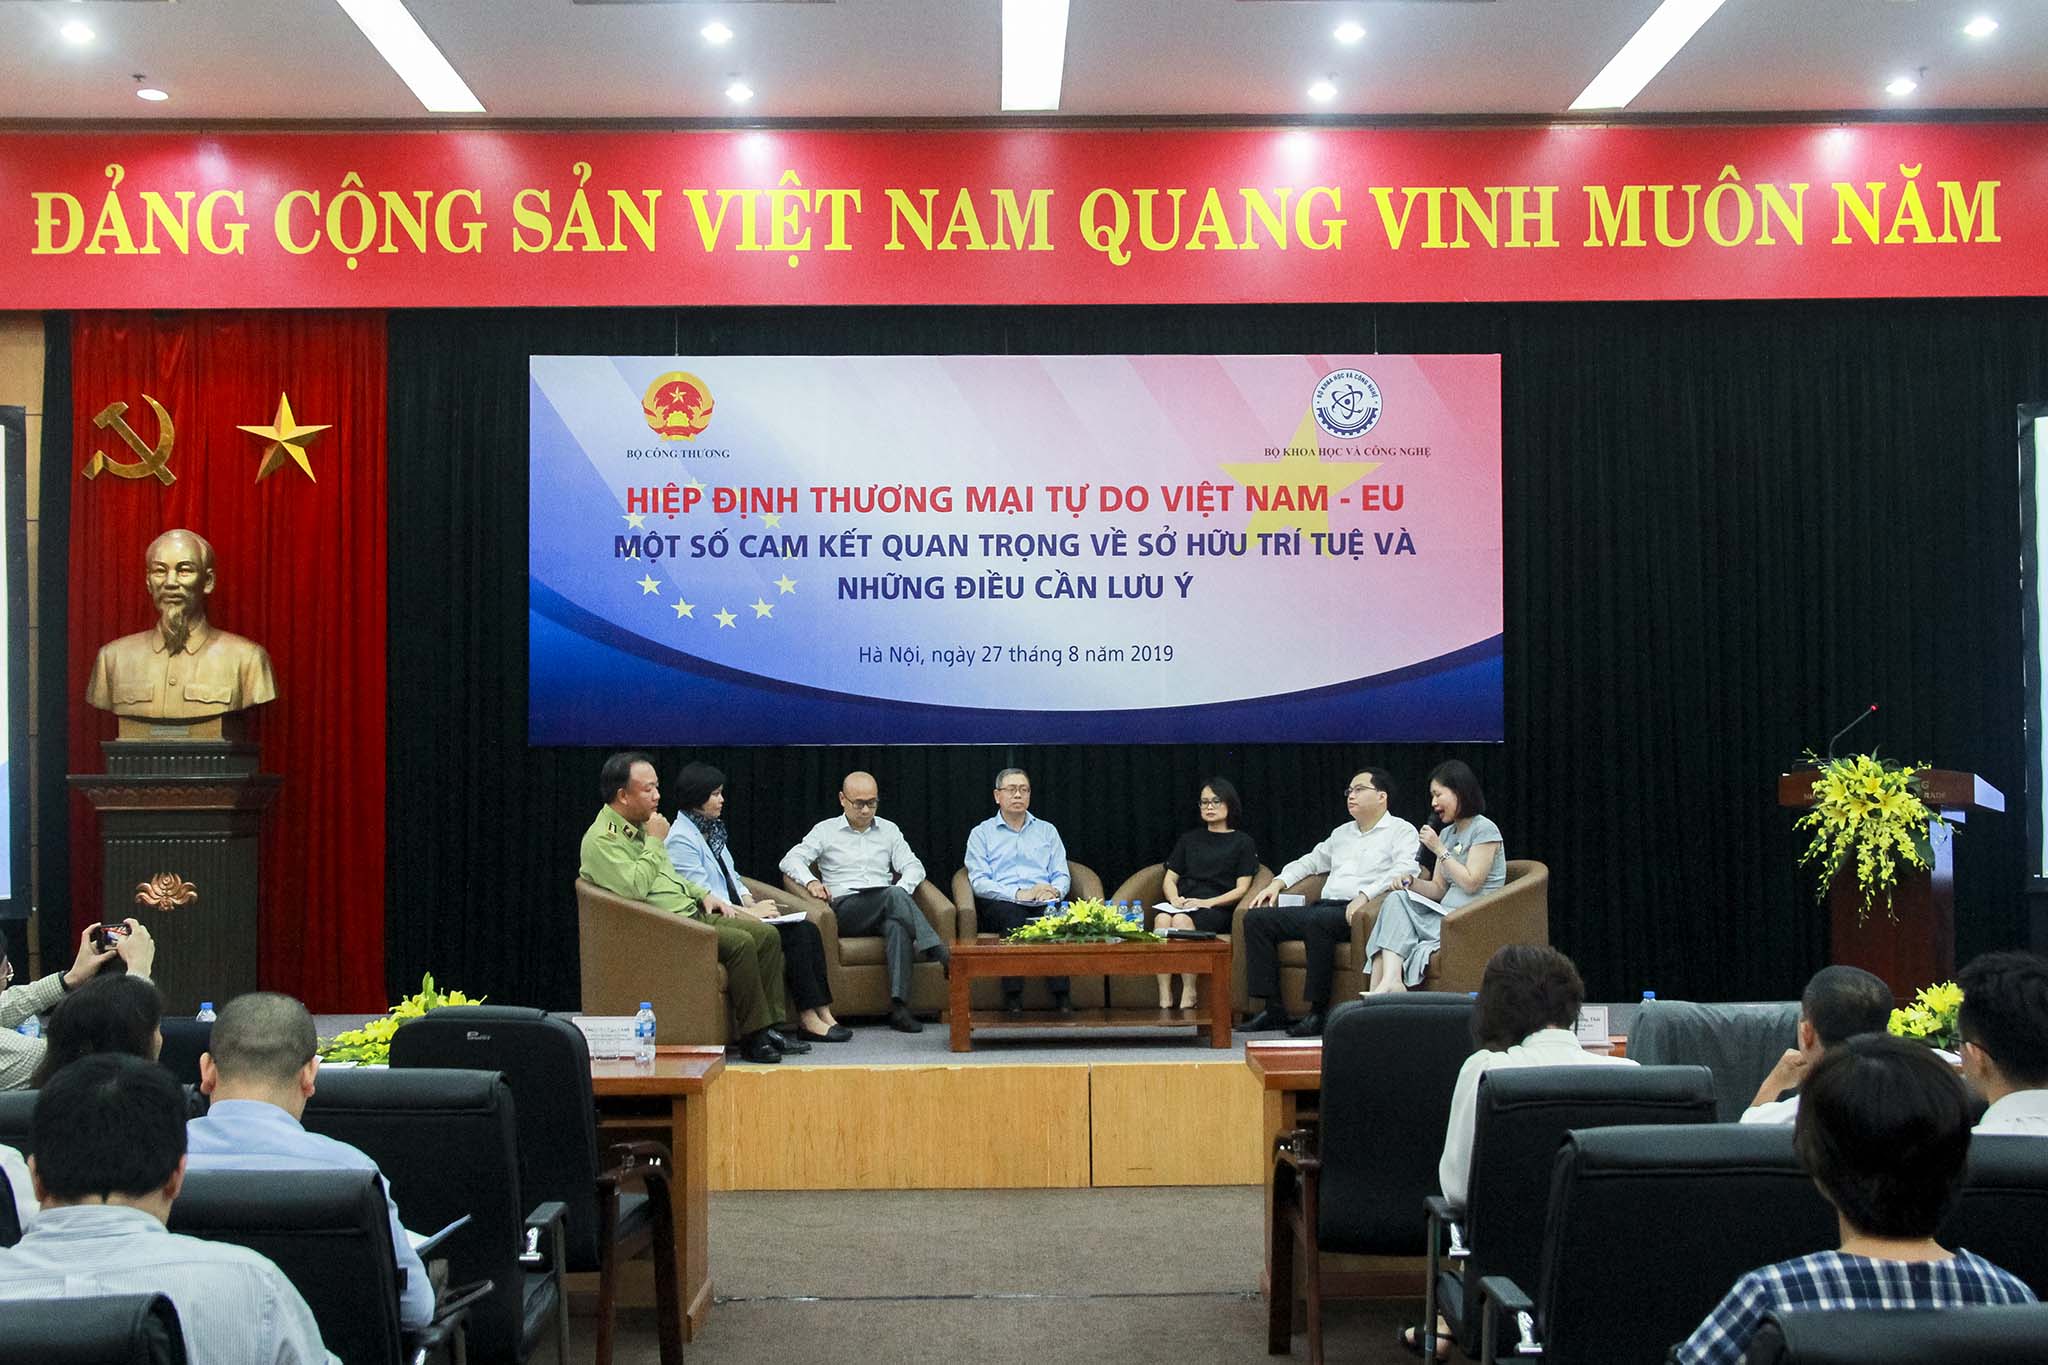 Hội nghị “Hiệp định Thương mại tự do giữa Việt Nam và Liên minh châu Âu (EVFTA) – Các cam kết quan trọng về sở hữu trí tuệ và những điều cần lưu ý”